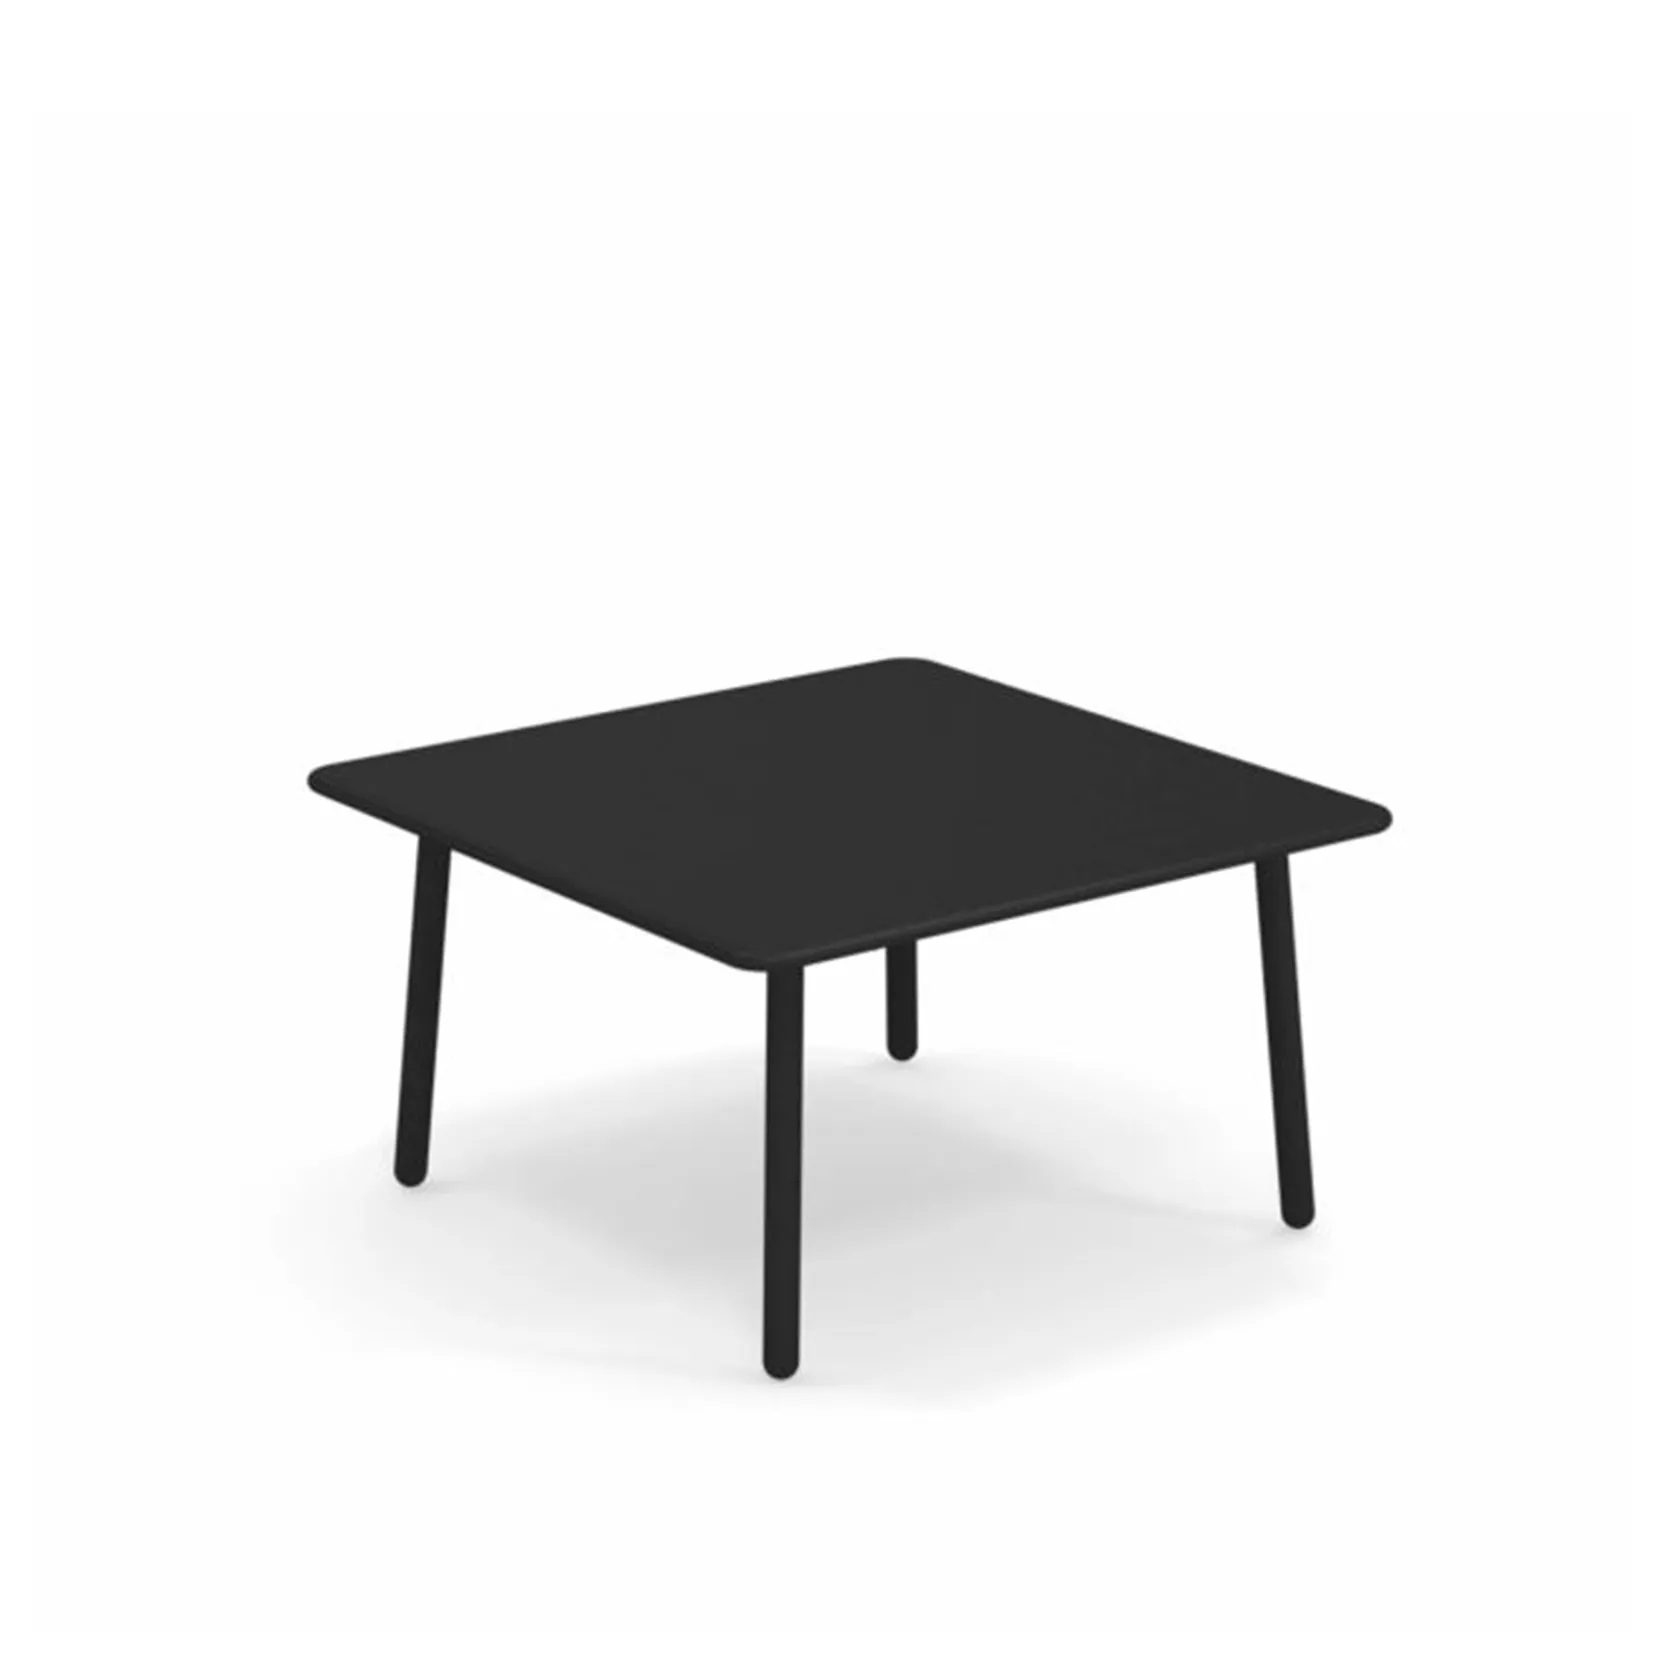 Om te mediteren Portaal Uitstekend Small table Emu Darwin - BartHome